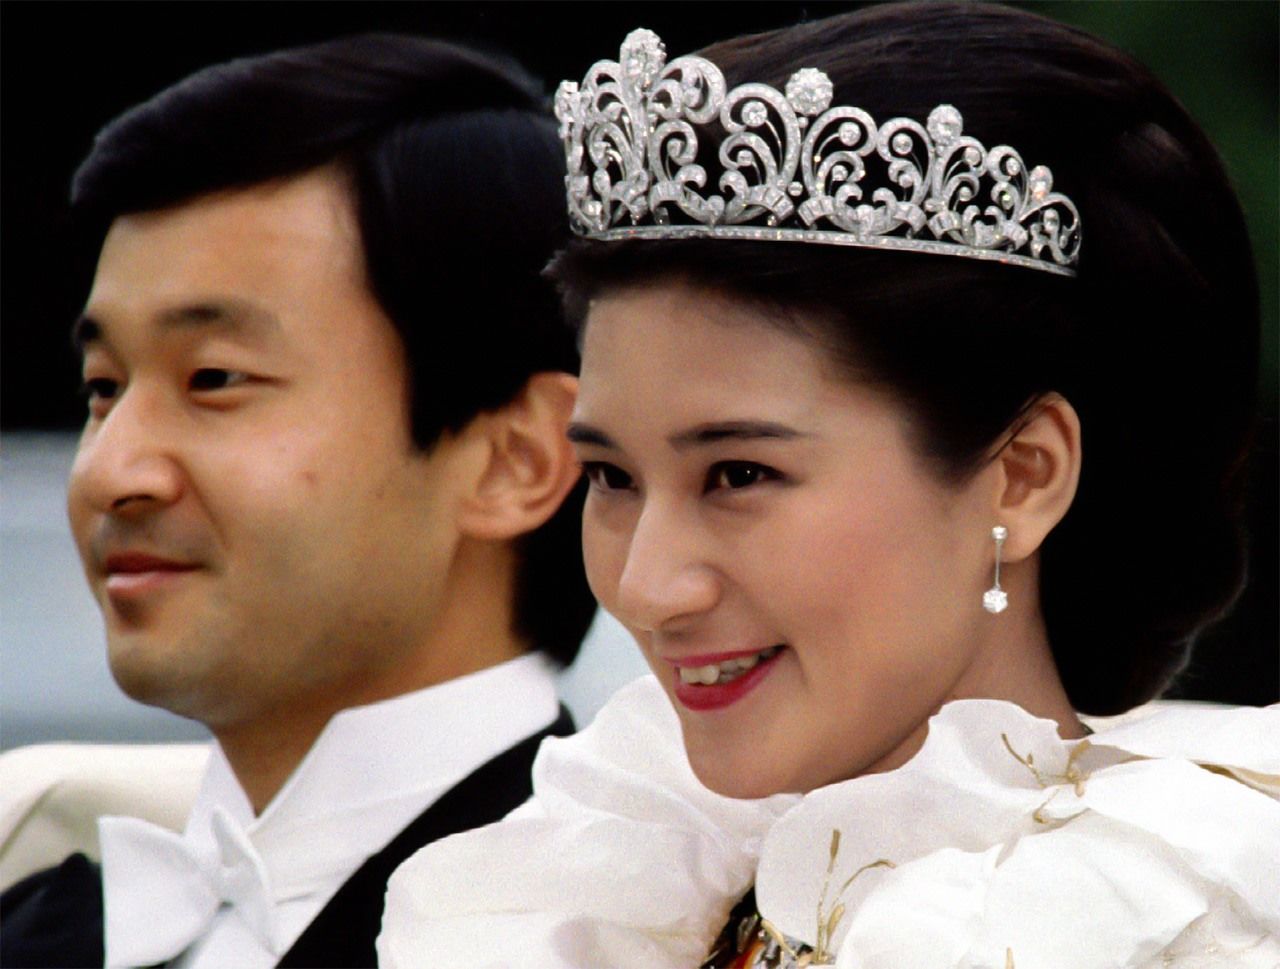 ولي العهد الأمير ناروهيتو والأميرة ماساكو في حفل زفافهما في يونيو/ حزيران 1993. رويترز.